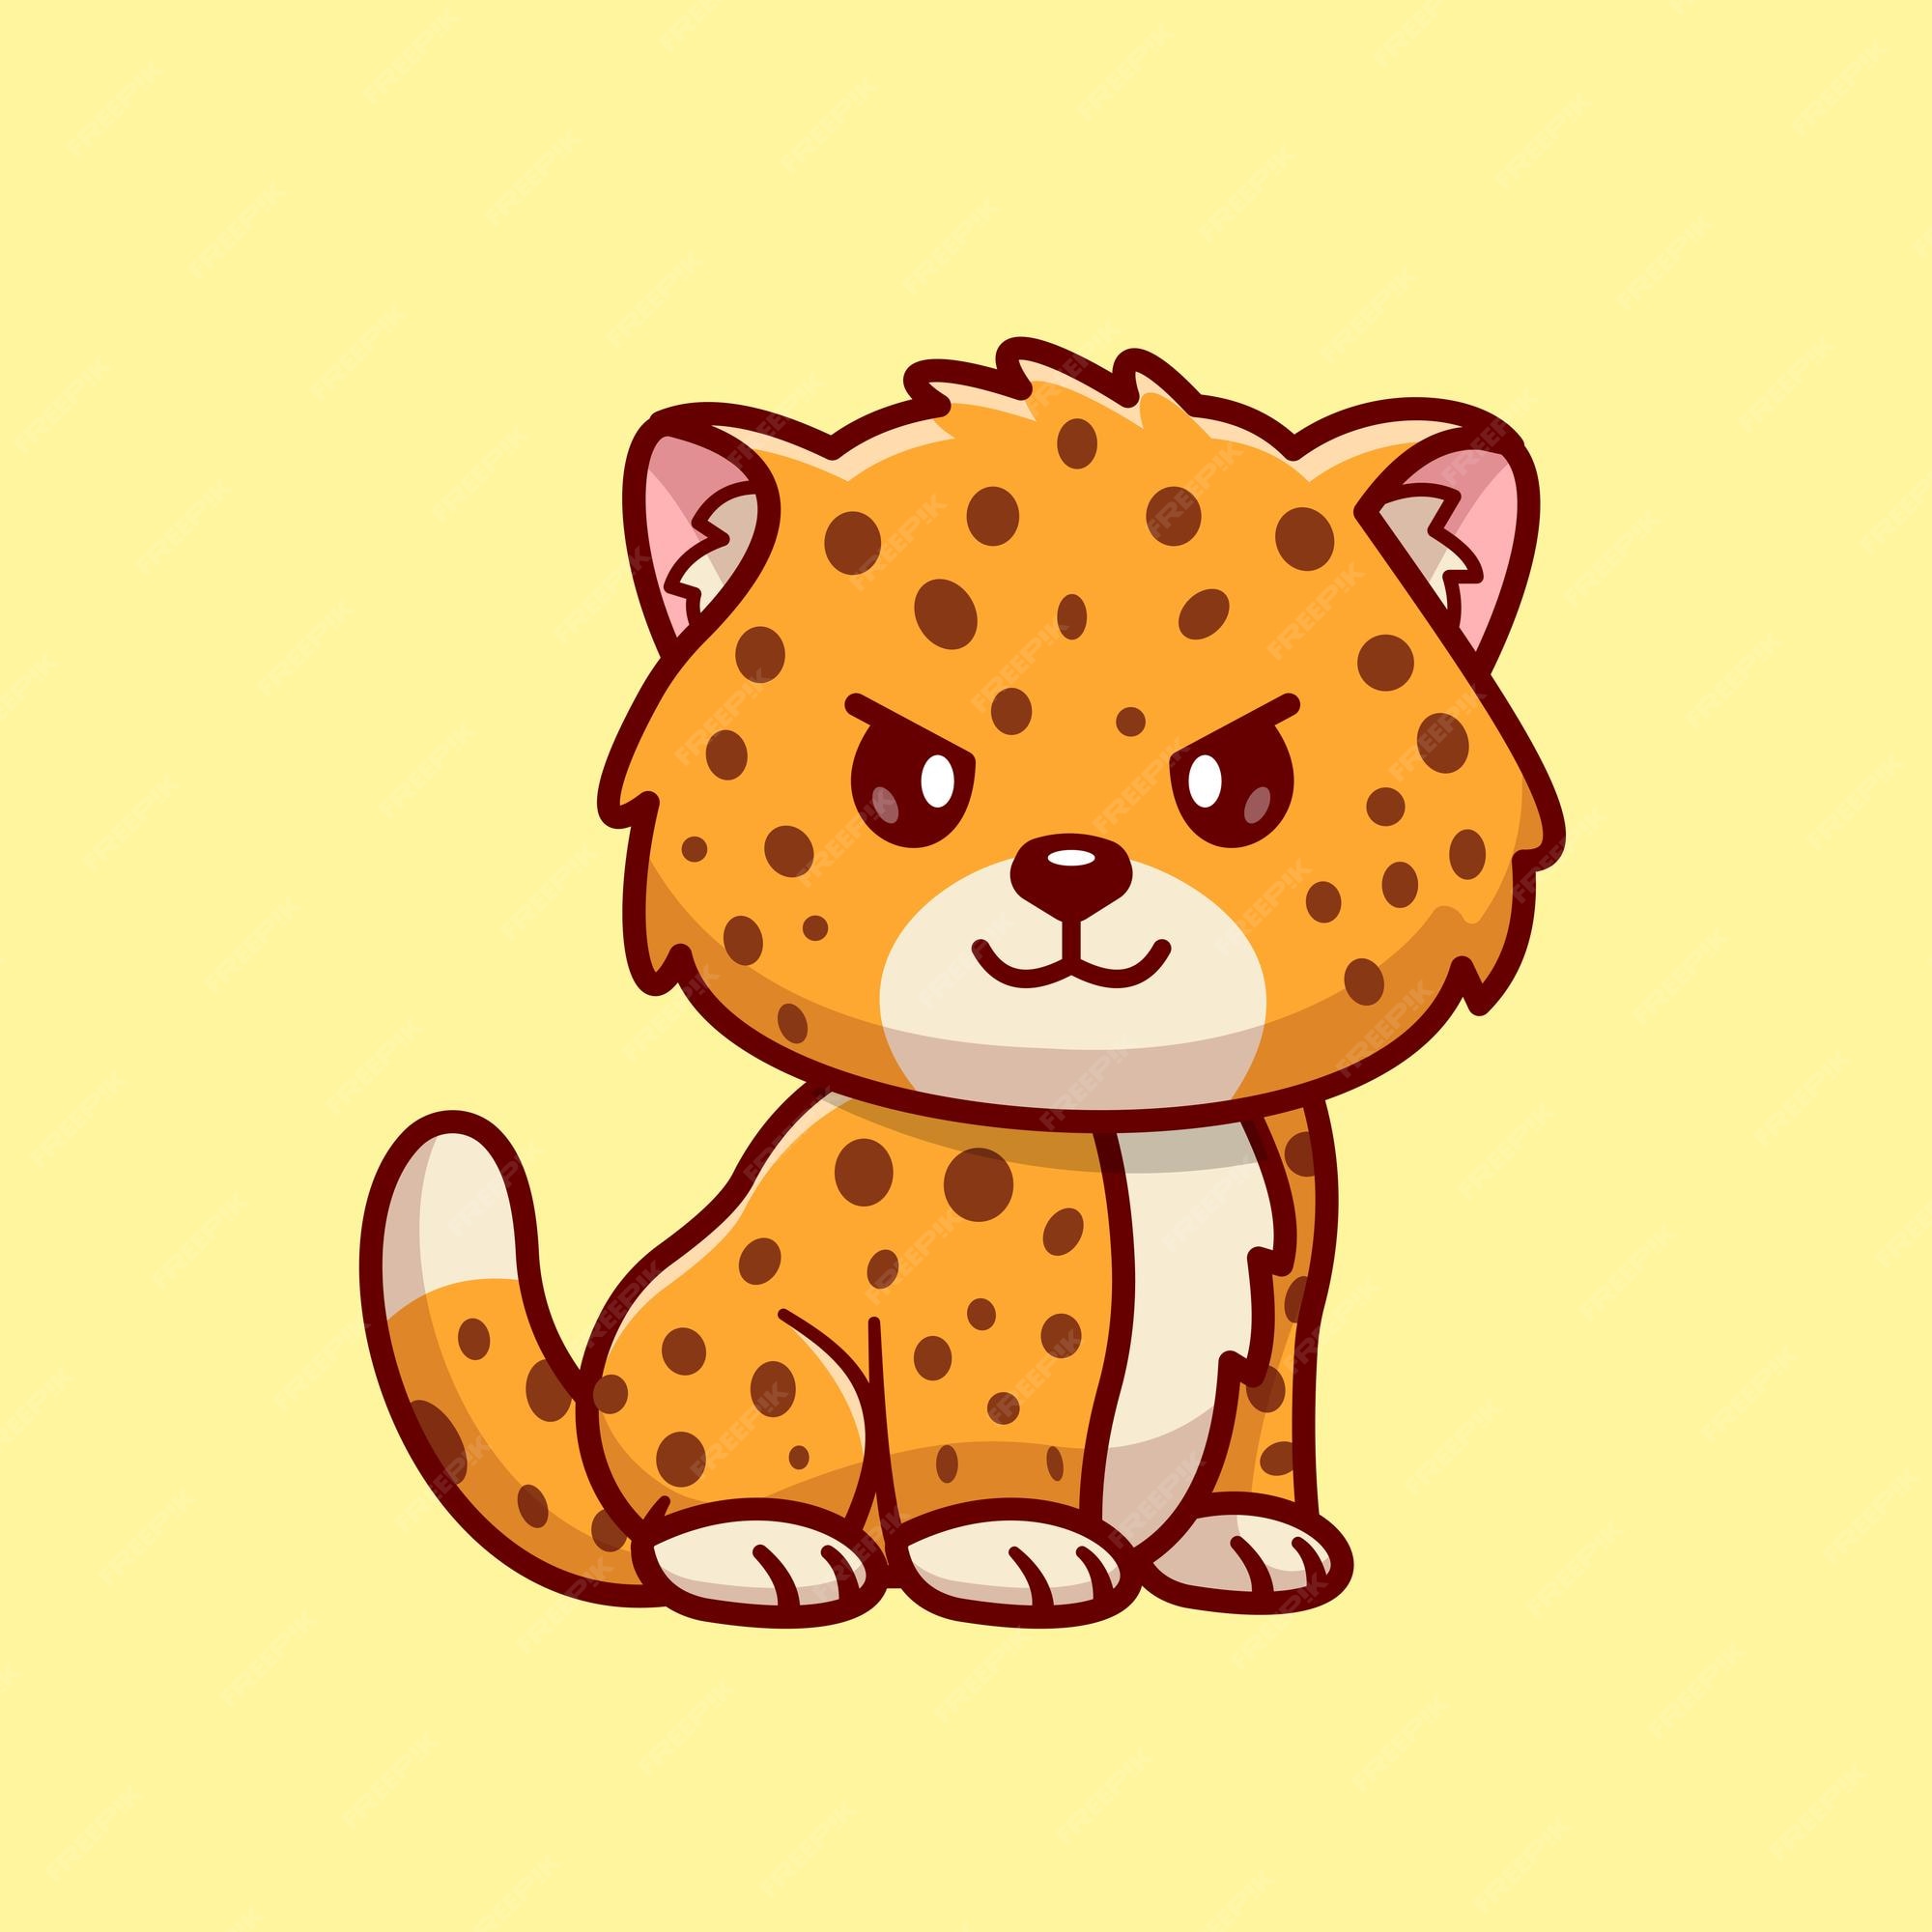 Cartoon Cheetah Images - Free Download on Freepik